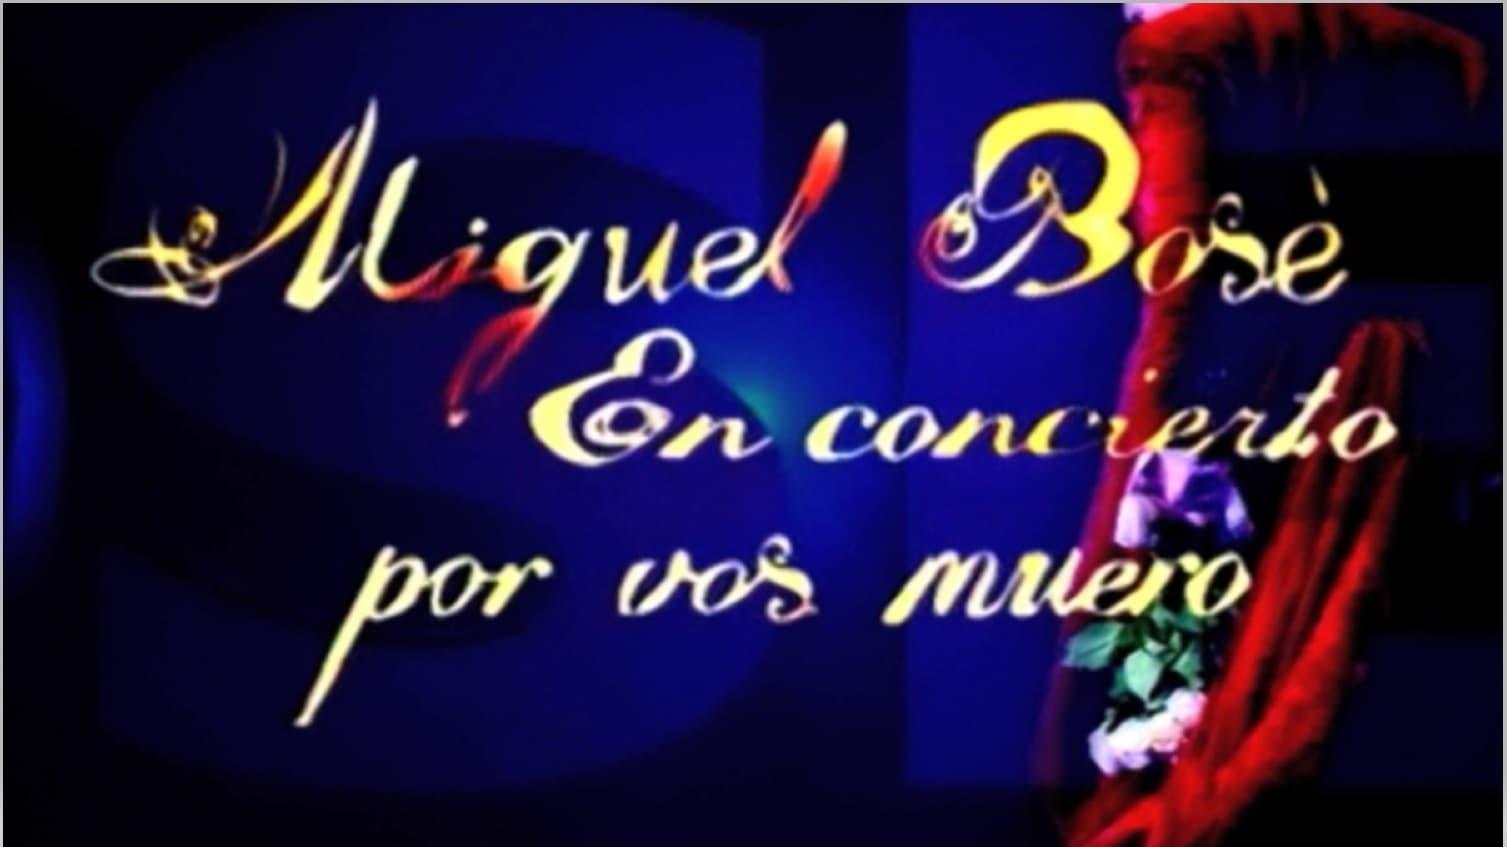 Miguel Bosé - Por vos muero backdrop